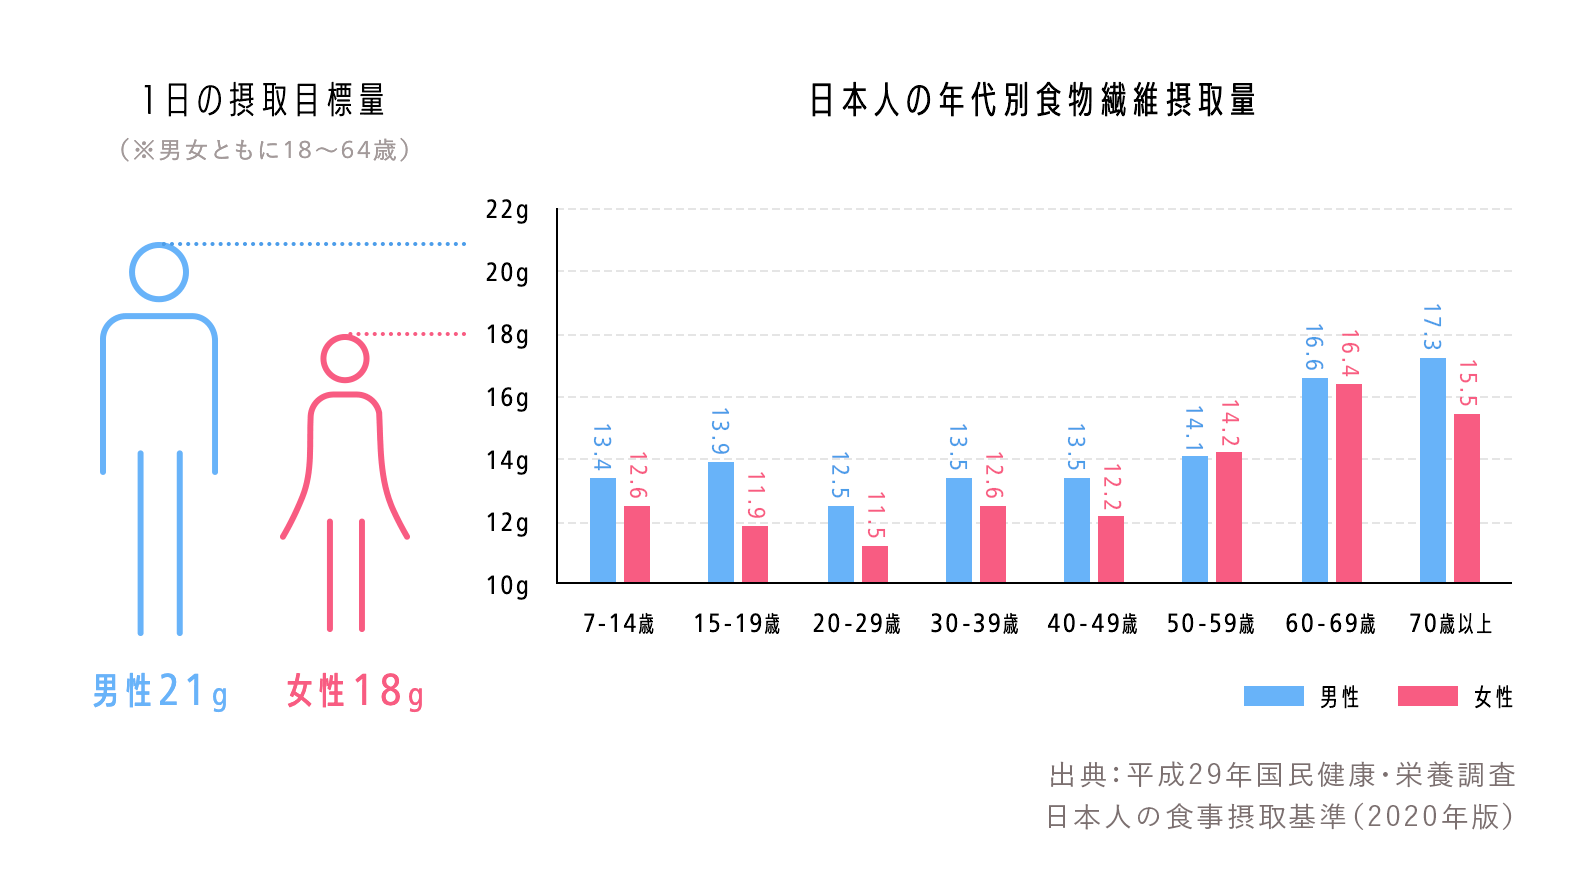 1日の摂取目標量と日本人の年代別食物センイ摂取量